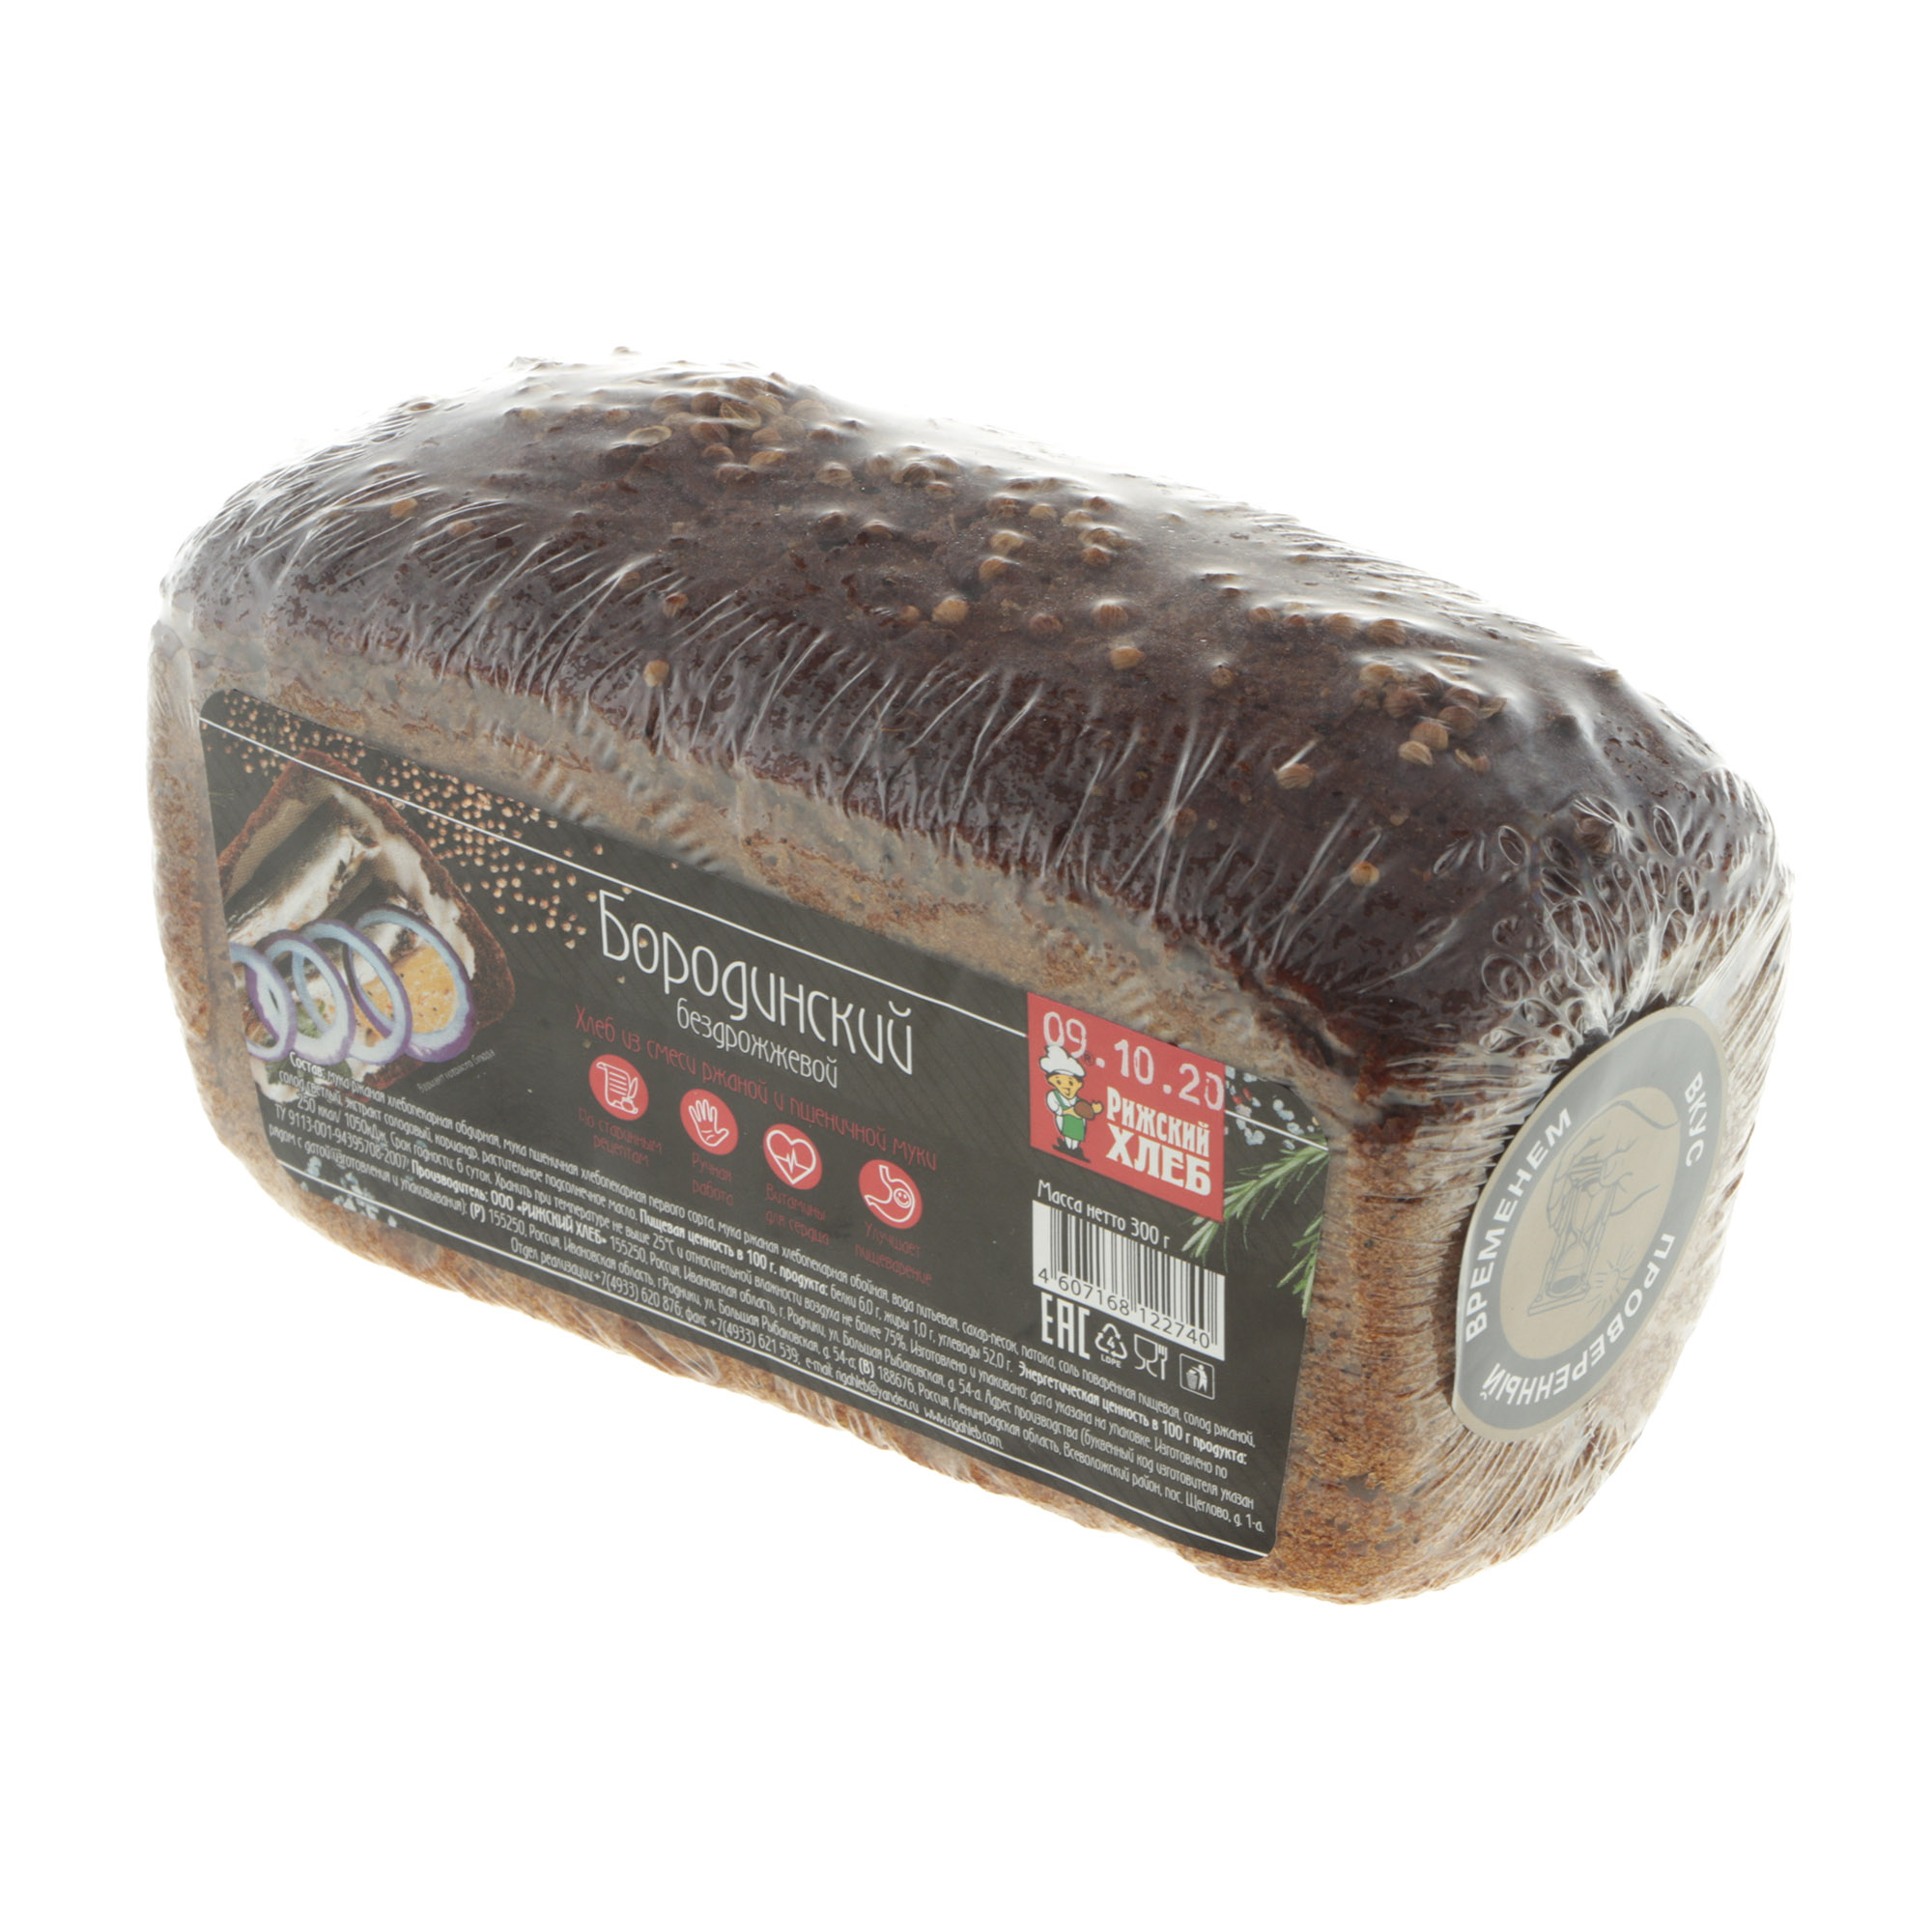 Хлеб Рижский хлеб бородинский 300 г хлеб бородинский королёвский хлеб нарезная часть 390 г